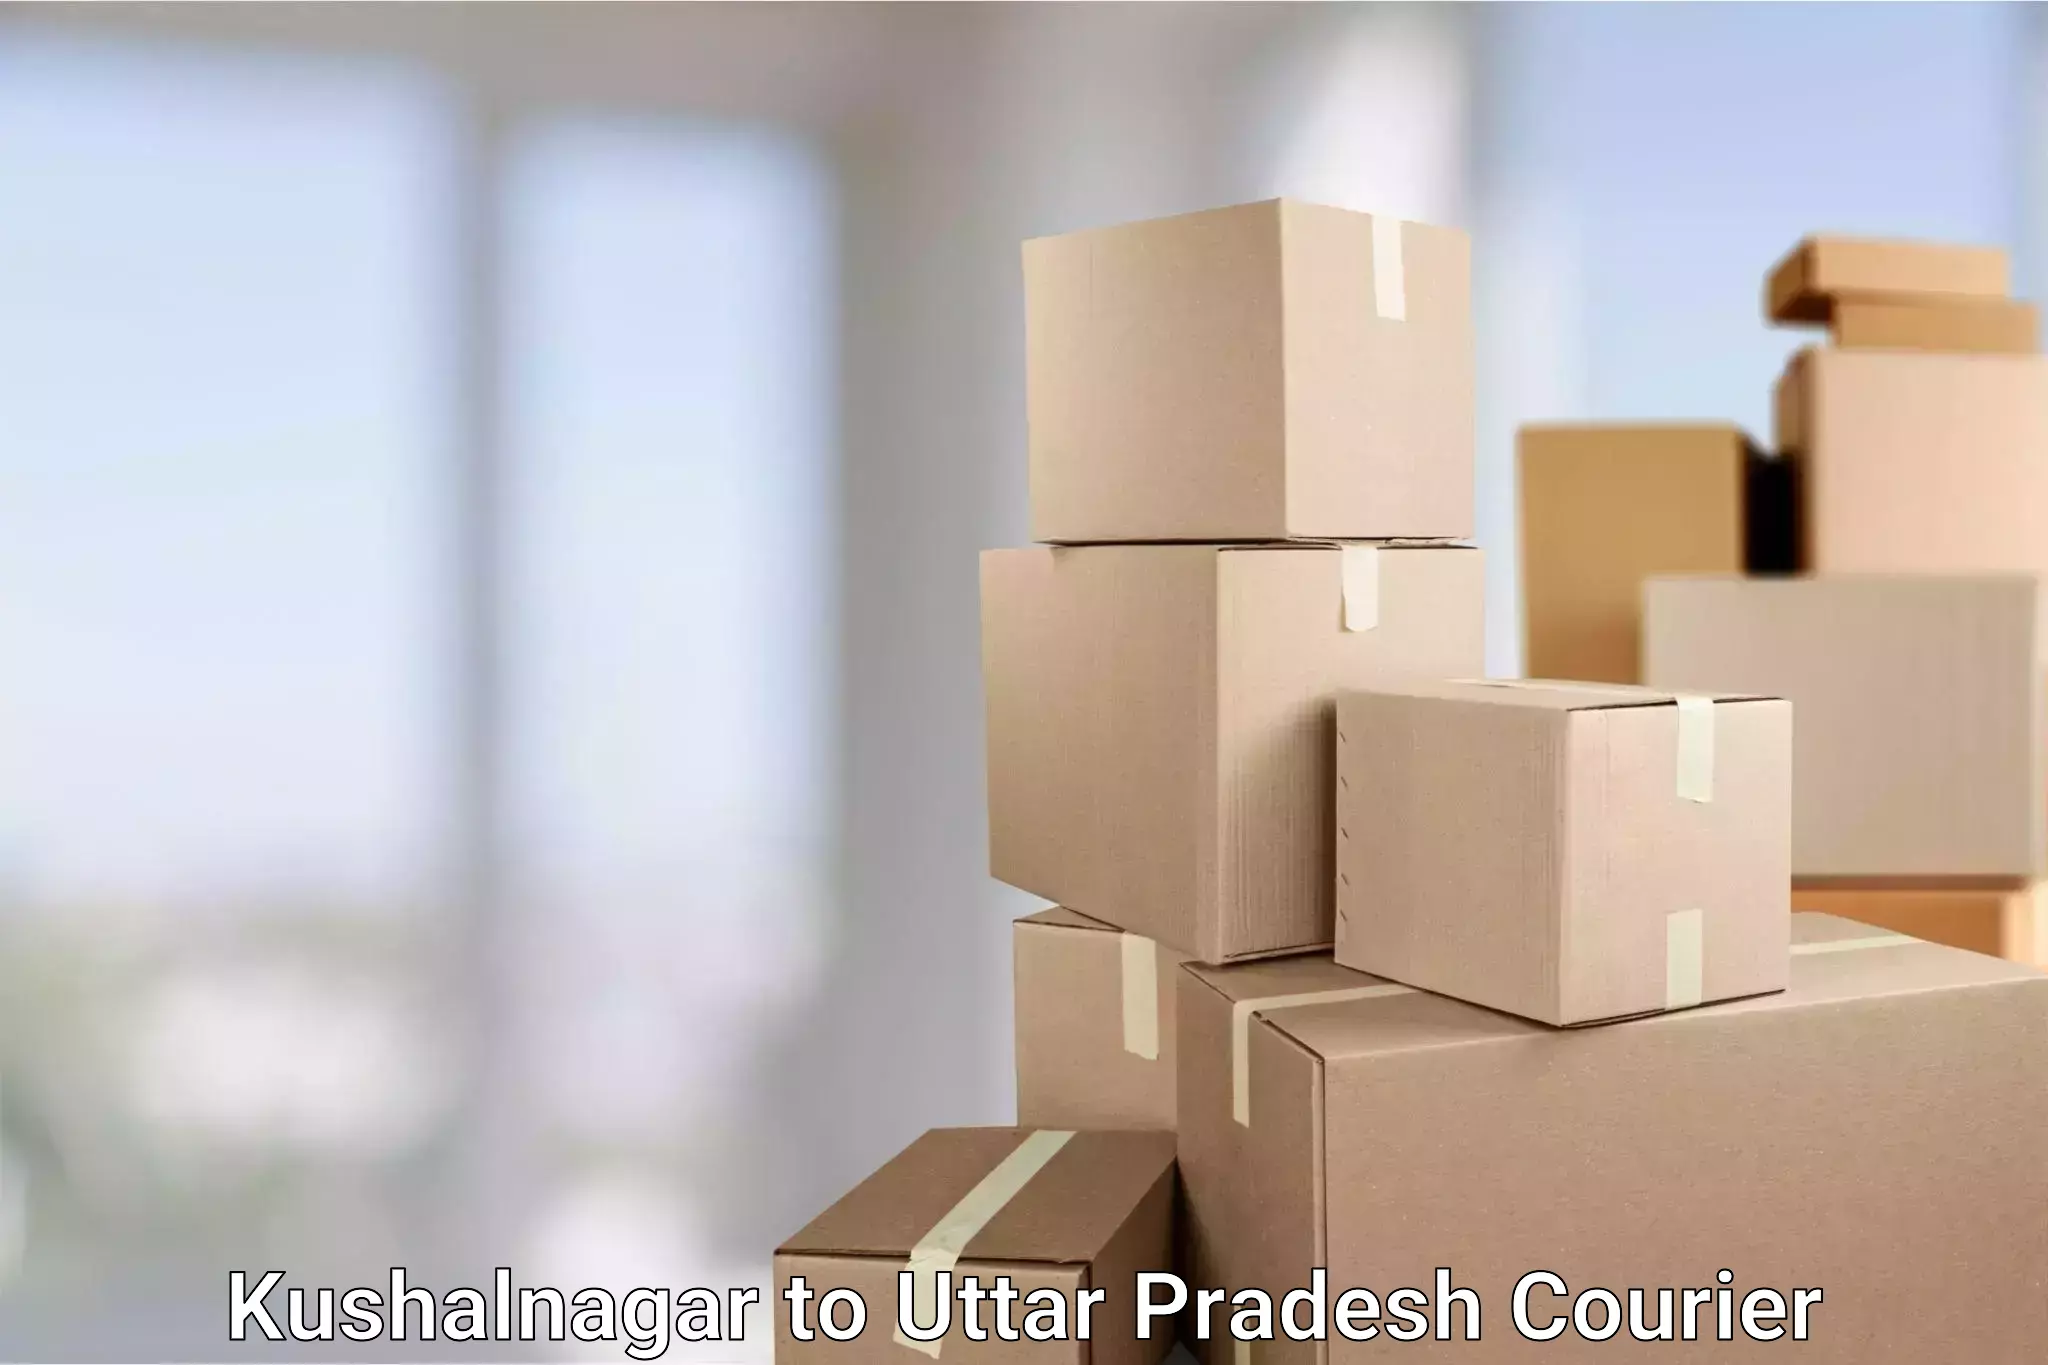 Courier service comparison Kushalnagar to Uttar Pradesh